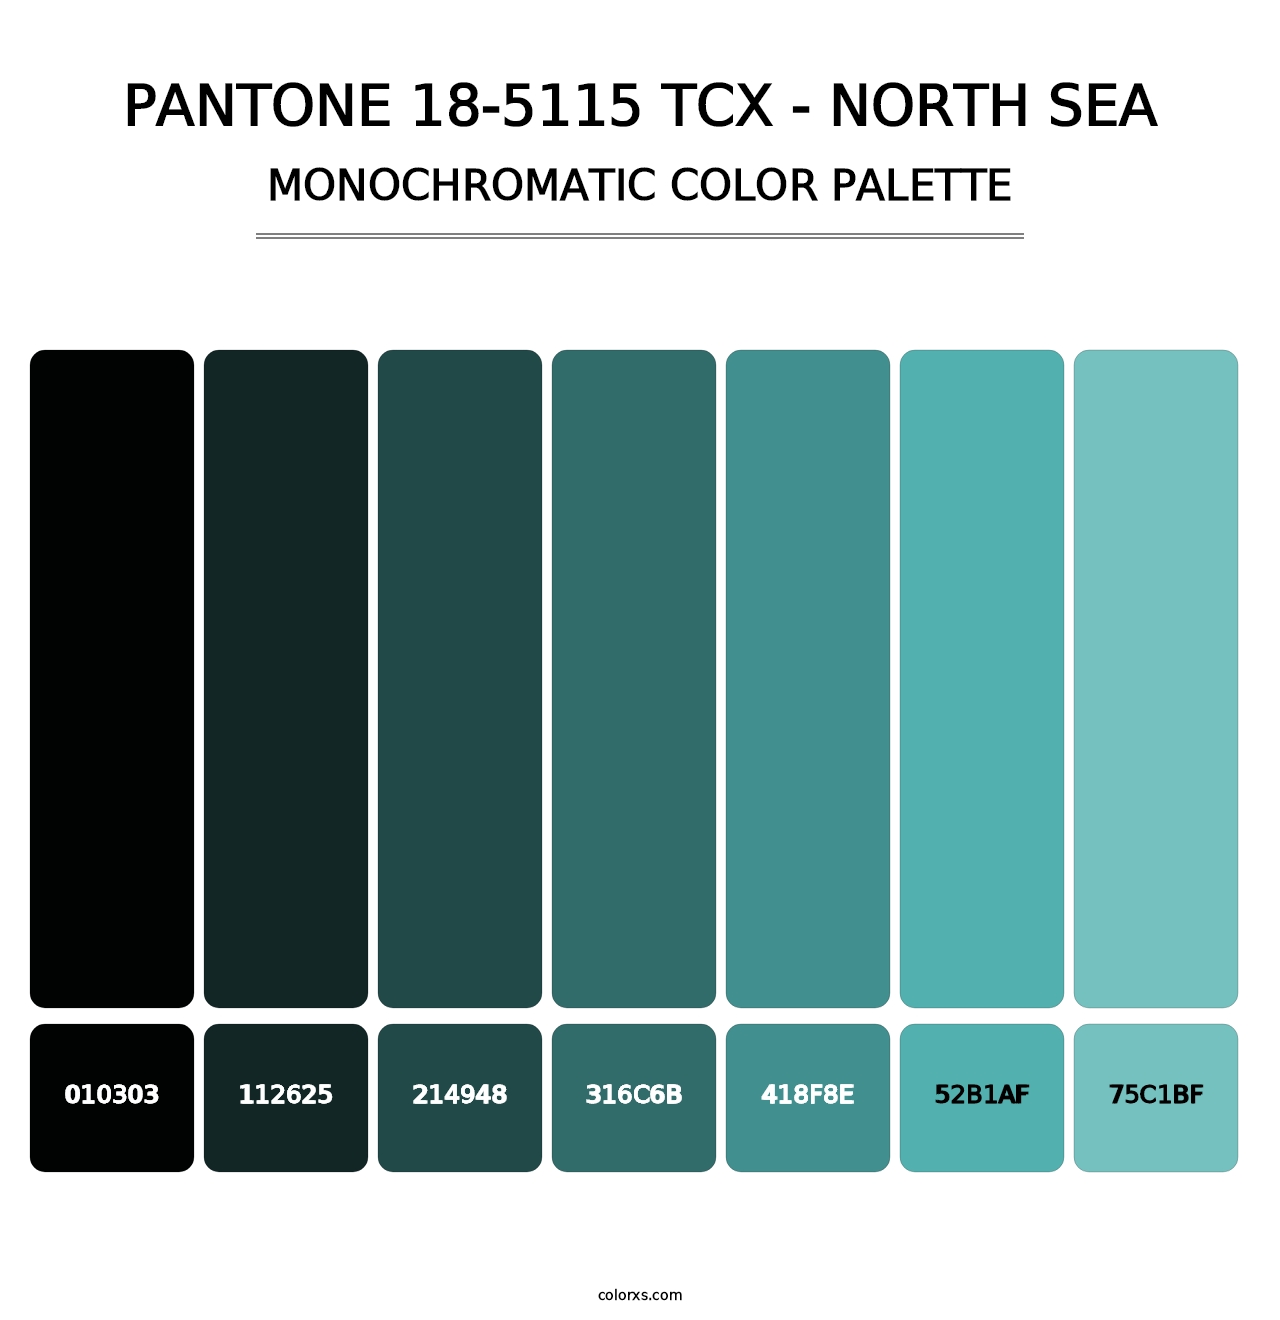 PANTONE 18-5115 TCX - North Sea - Monochromatic Color Palette